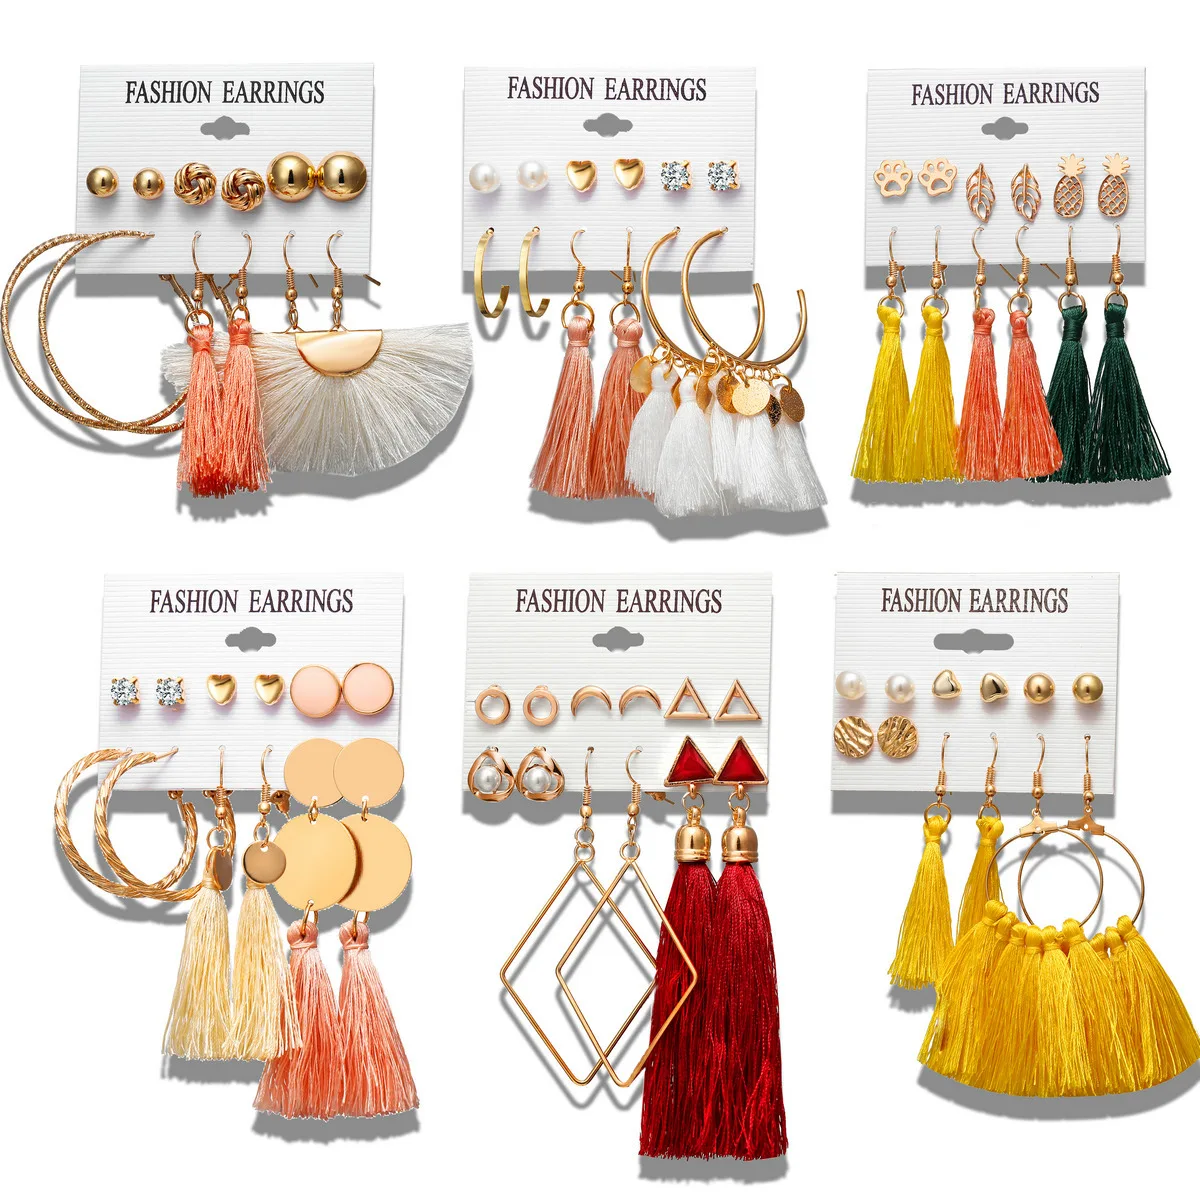 

6pair/set Long Tassels Earrings Set Tassel Earring Fashion Jewelry for Women Trendy Dangle Earrings Christmas Gifts